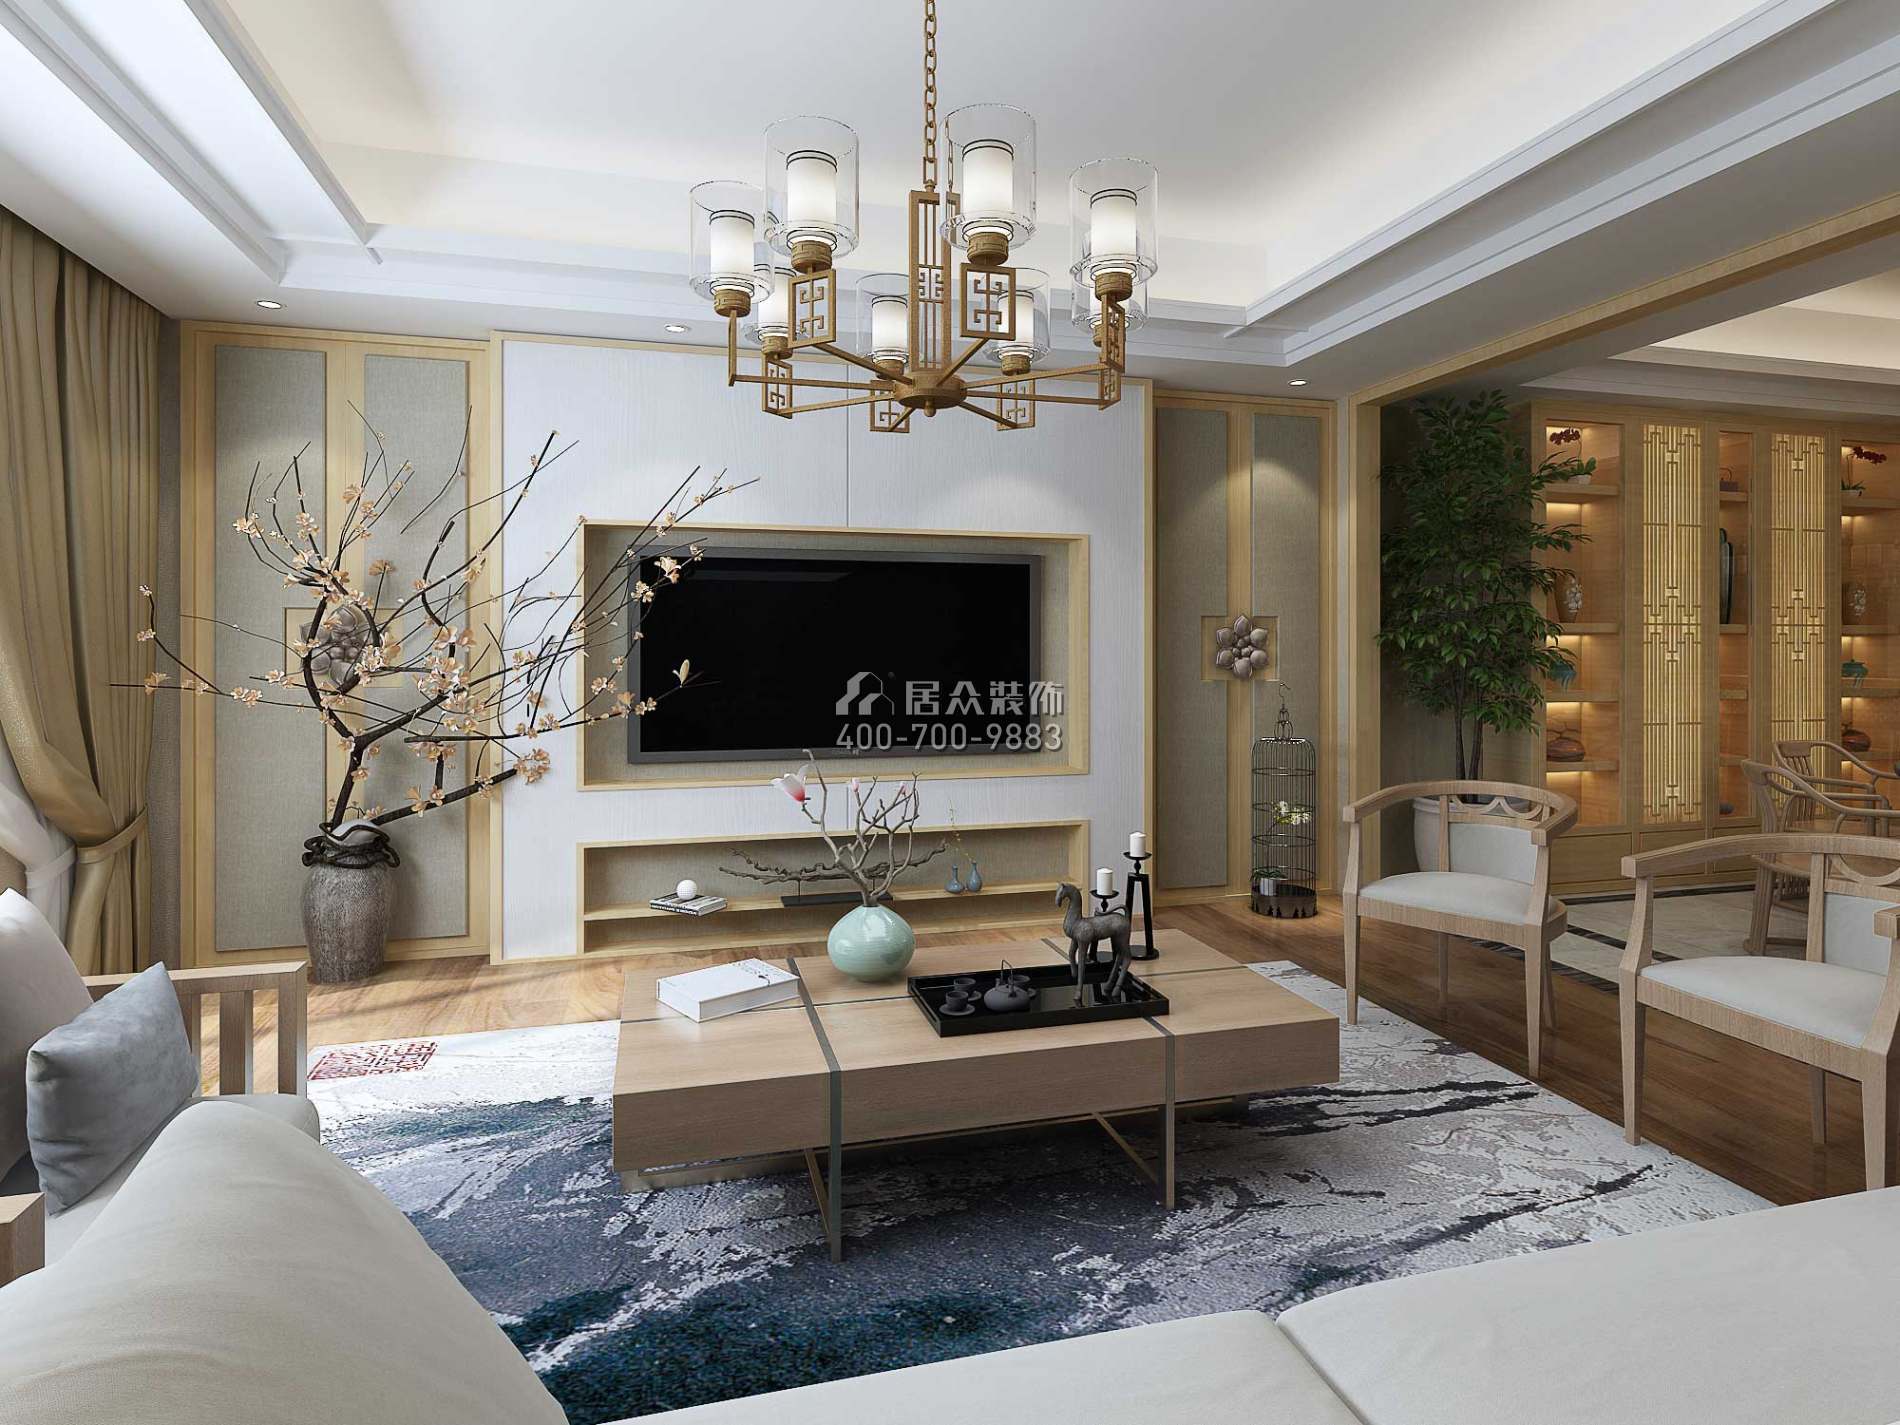 融创凡尔赛领馆108平方米中式风格平层户型客厅装修效果图